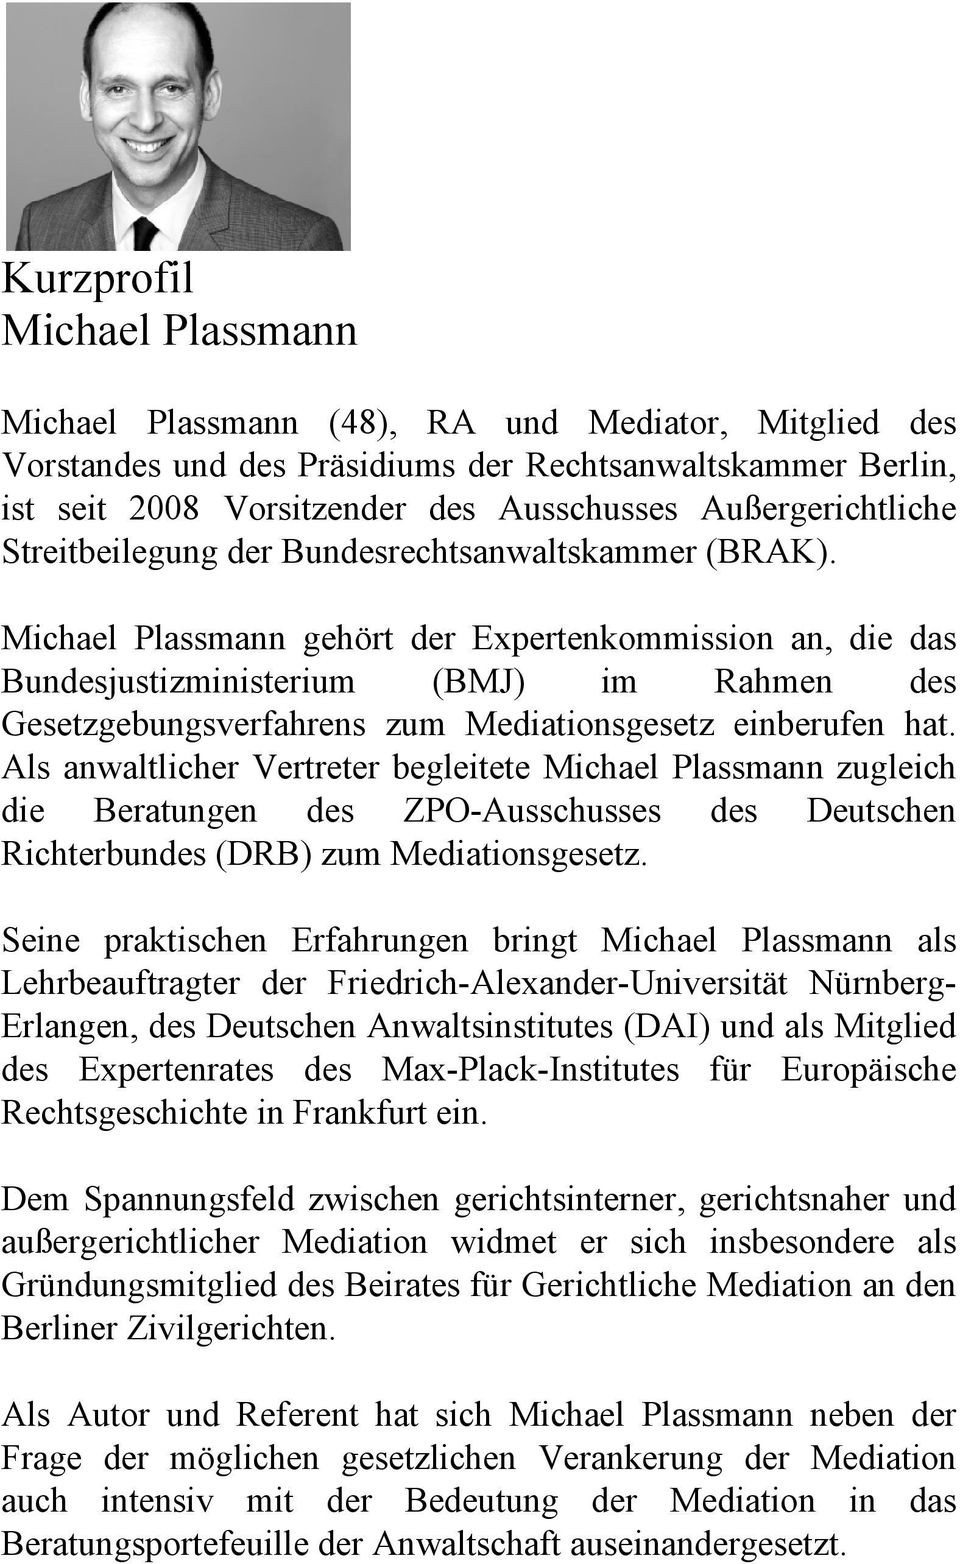 Michael Plassmann gehört der Expertenkommission an, die das Bundesjustizministerium (BMJ) im Rahmen des Gesetzgebungsverfahrens zum Mediationsgesetz einberufen hat.